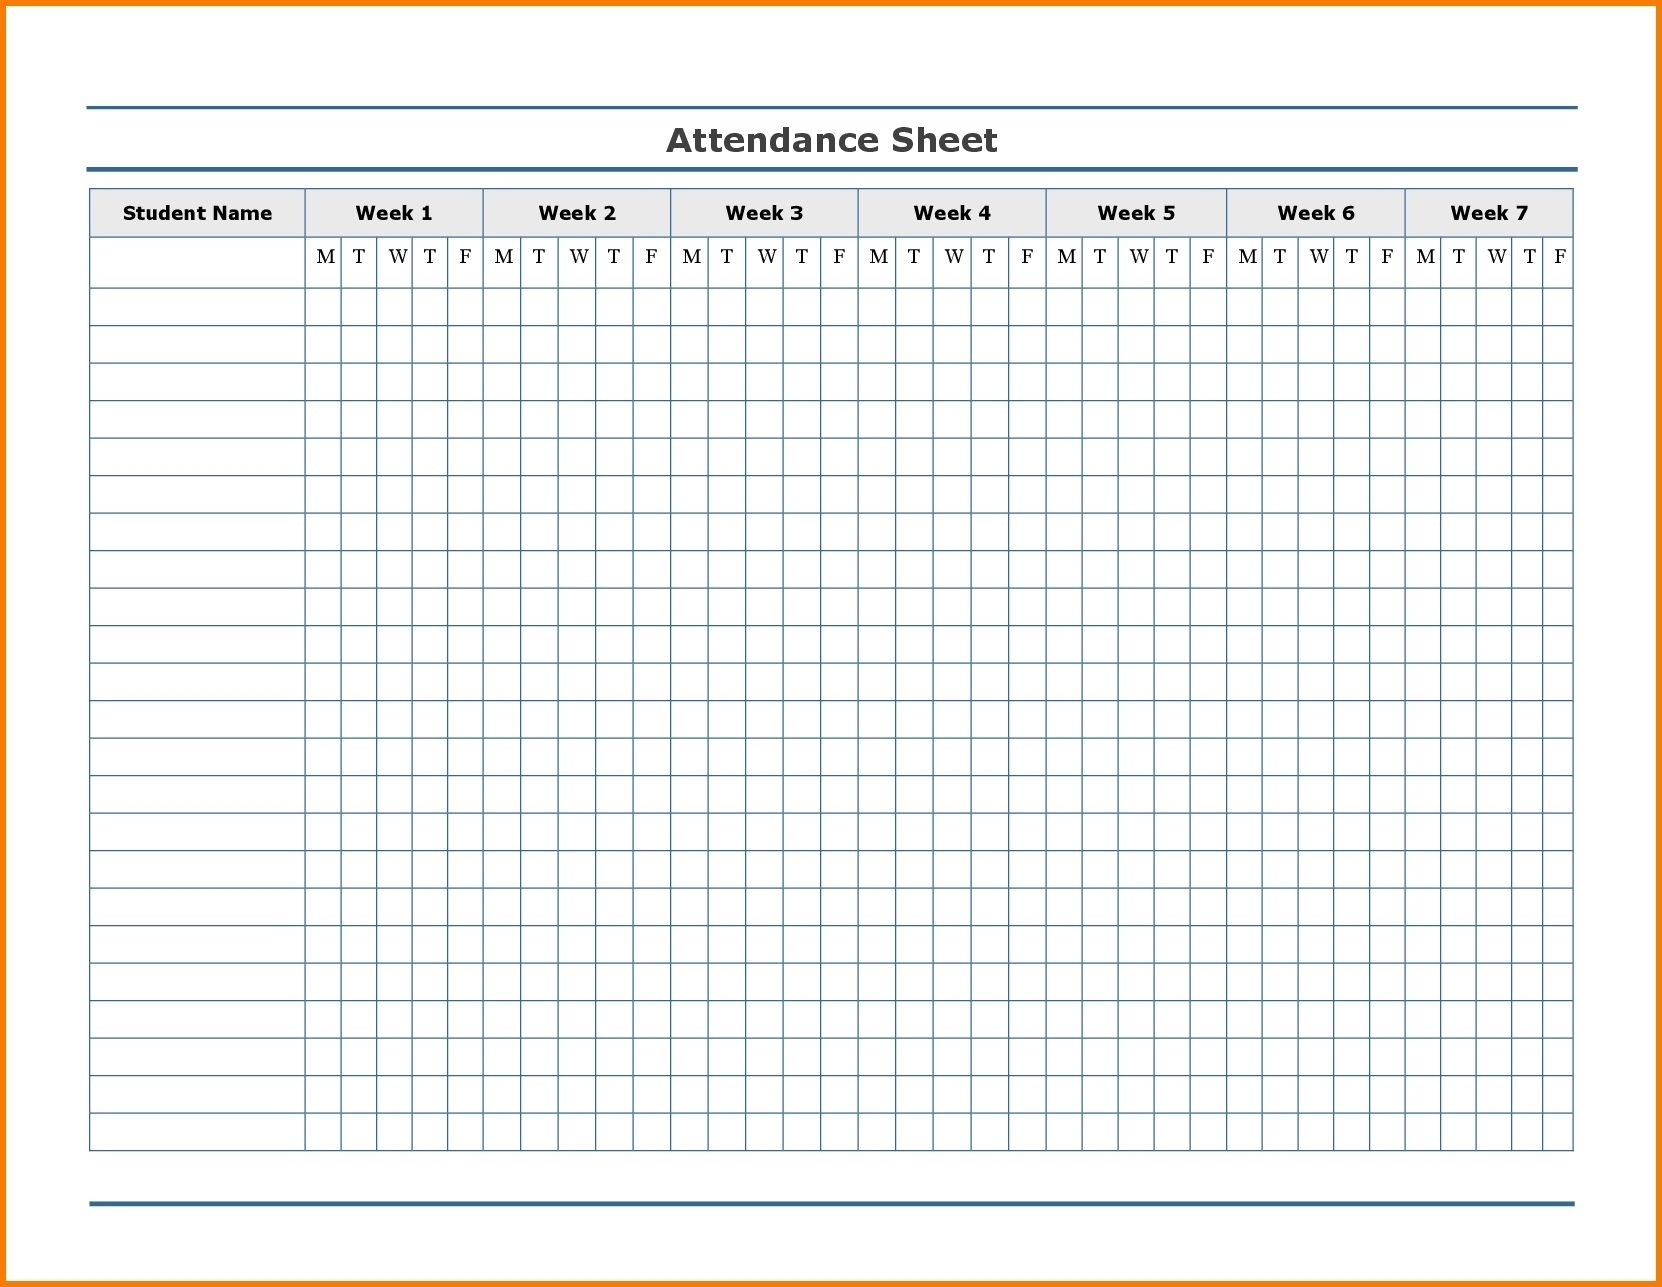 Free Employee Attendance Calendar | Employee Tracker within 2020 Employee Attendance Calendar Free